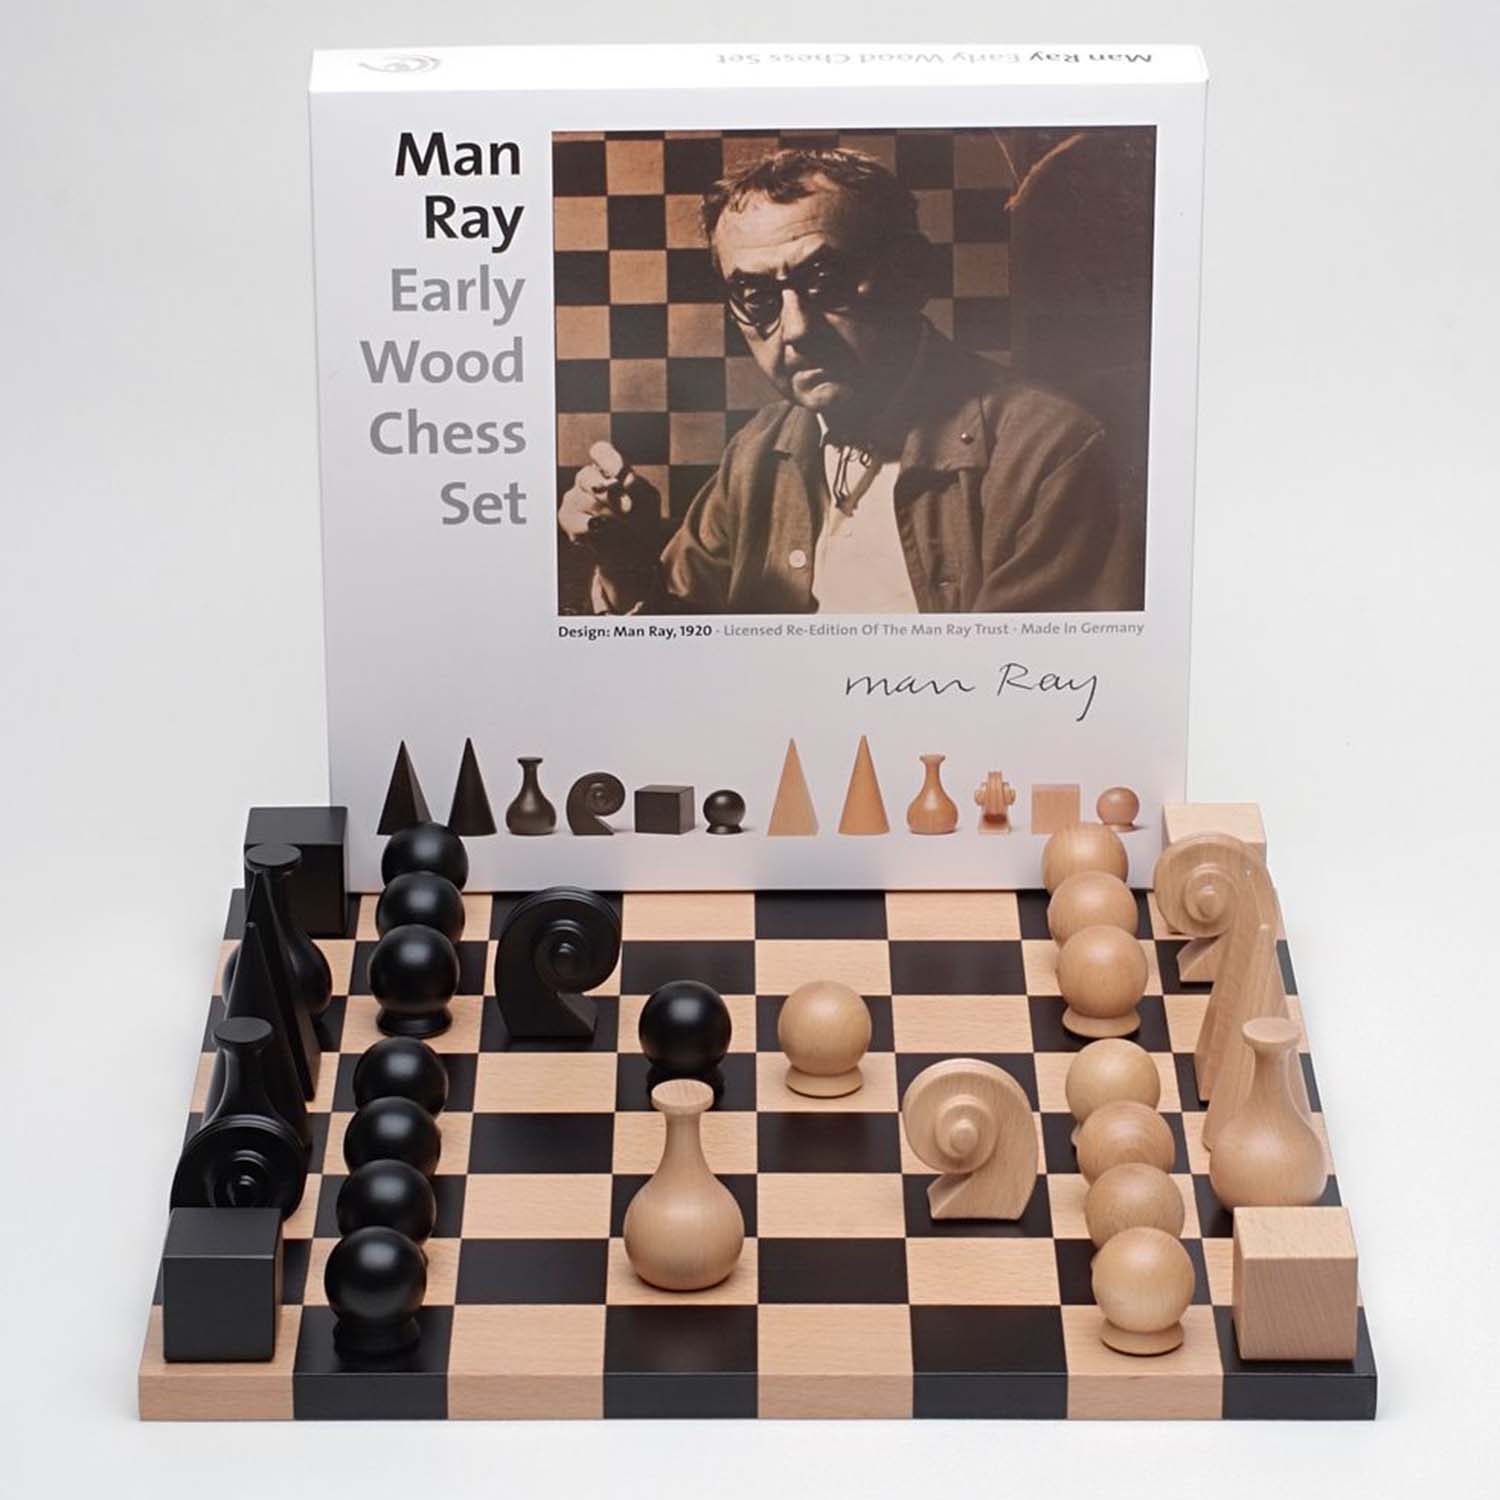 εικόνα του Σκάκι σετ από τον Man Ray